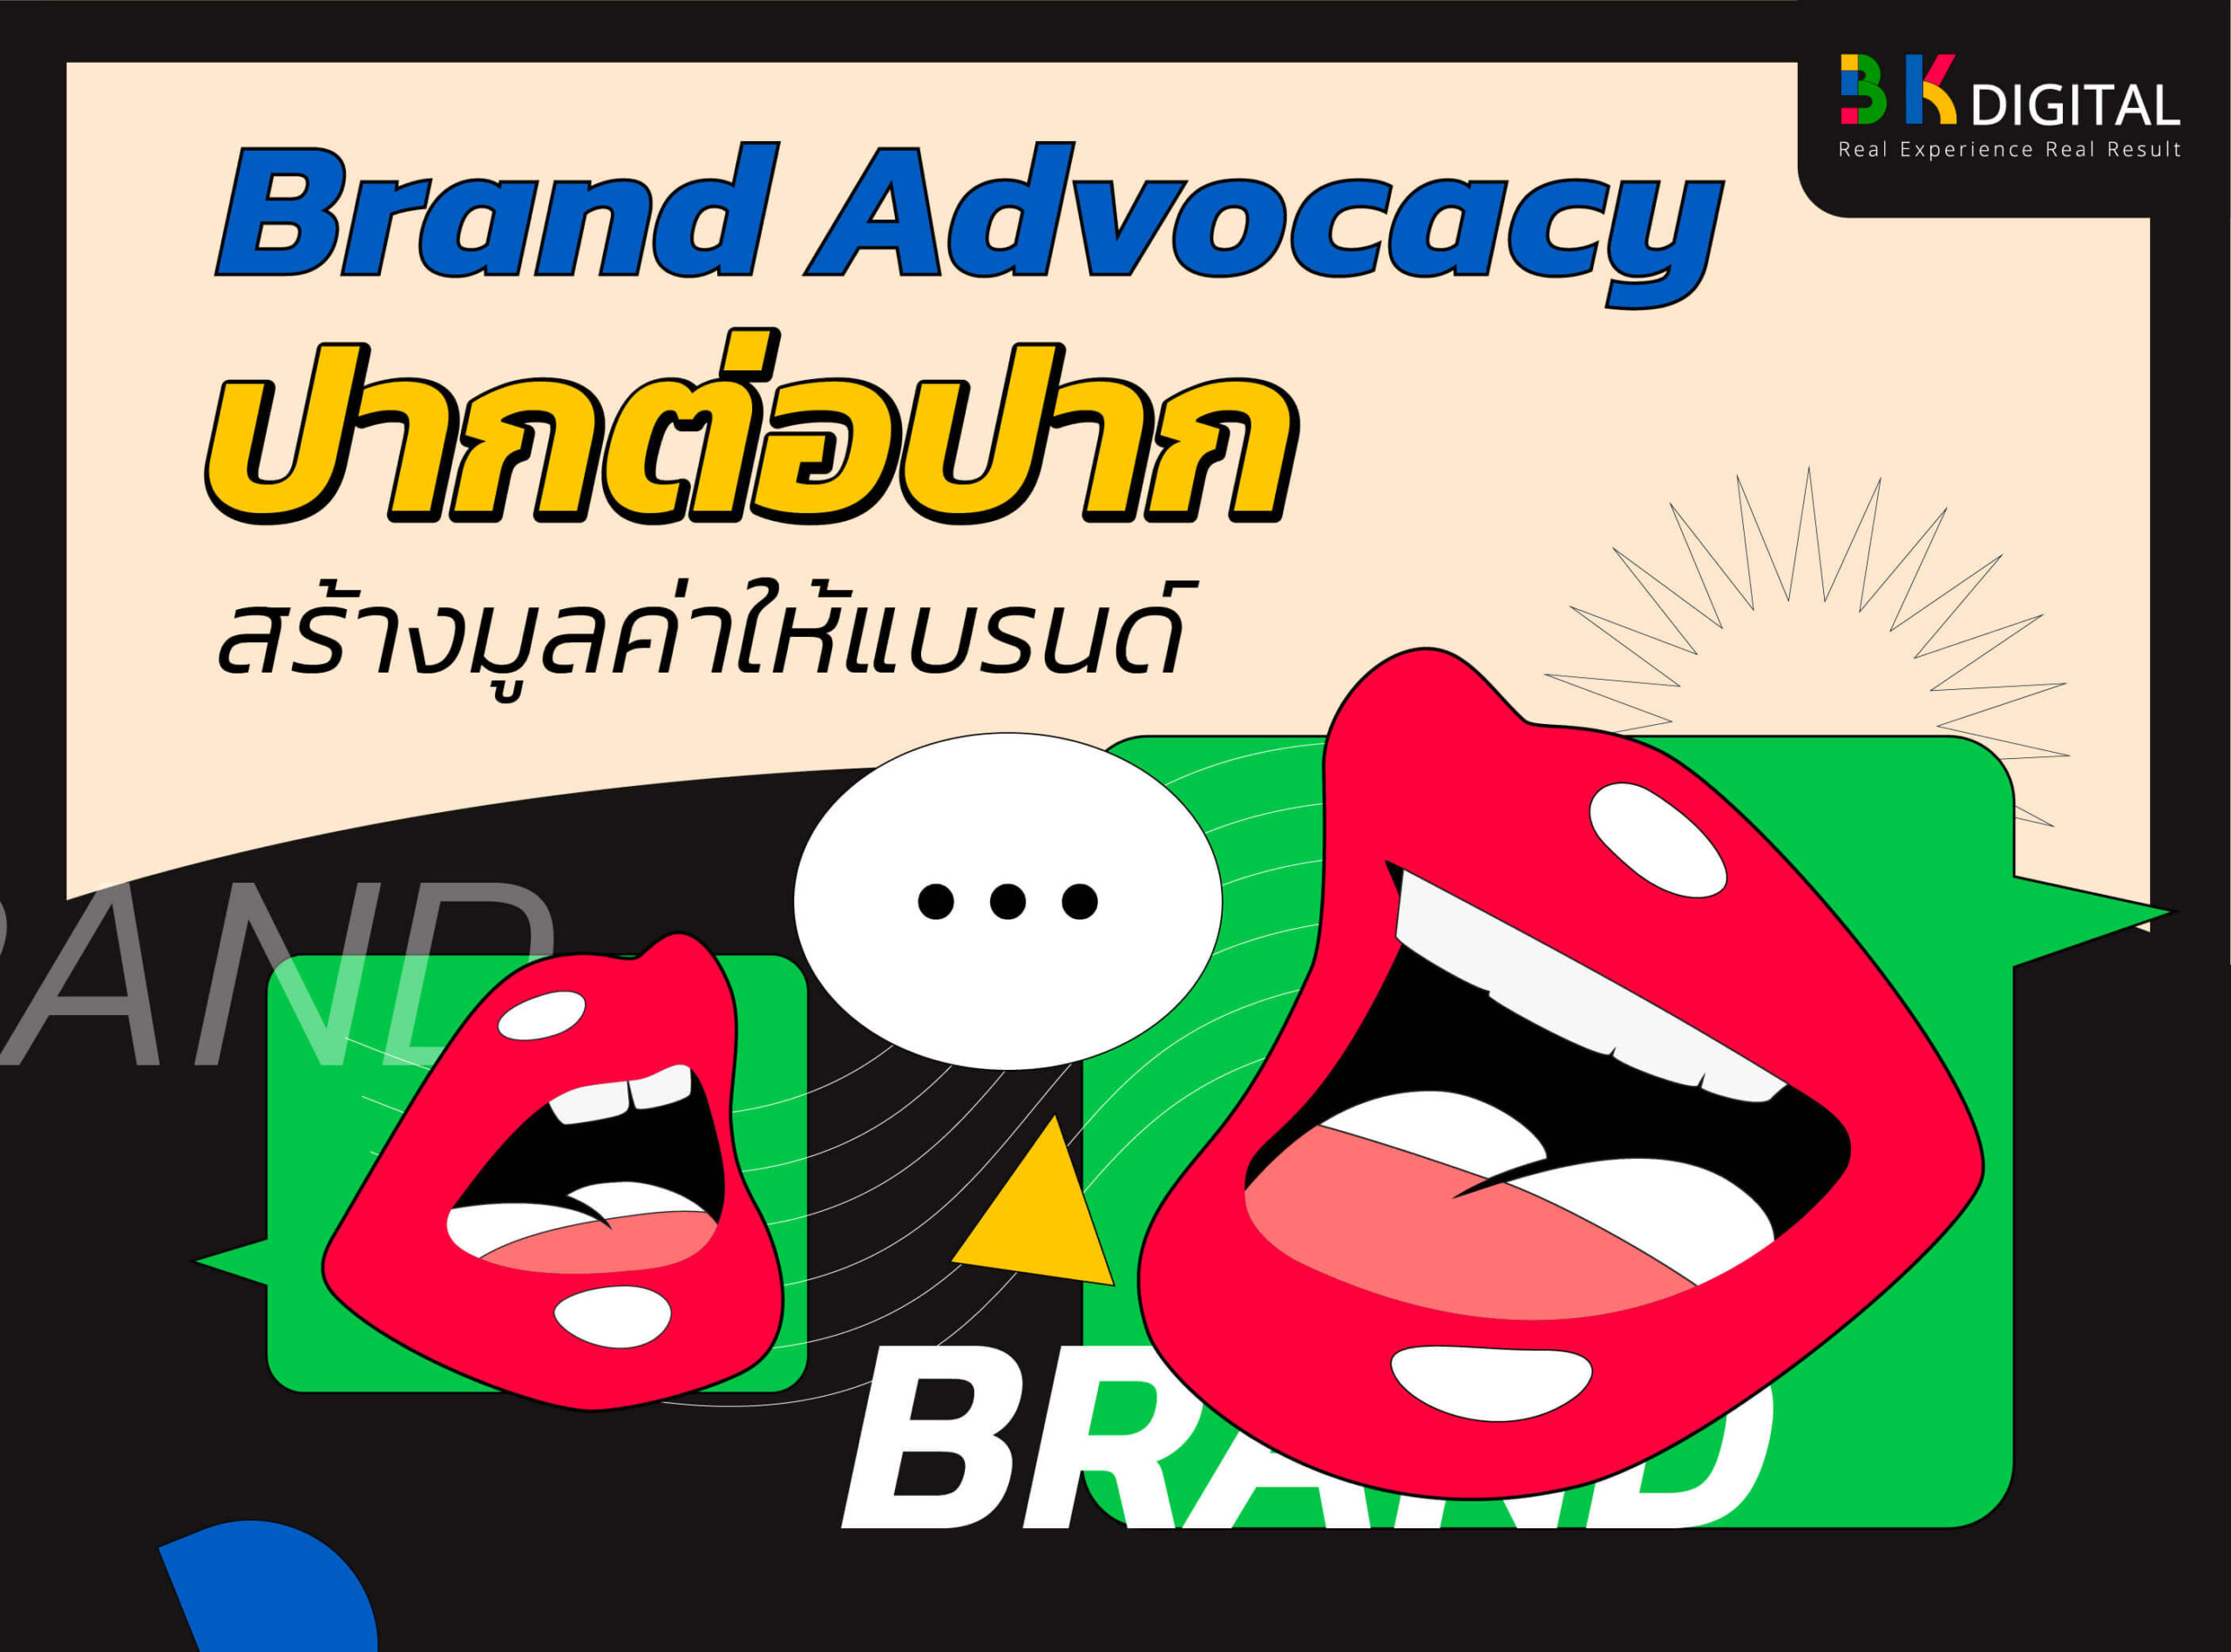 Brand Advocacy คือ ปากต่อปาก สร้างมูลค่าให้แบรนด์